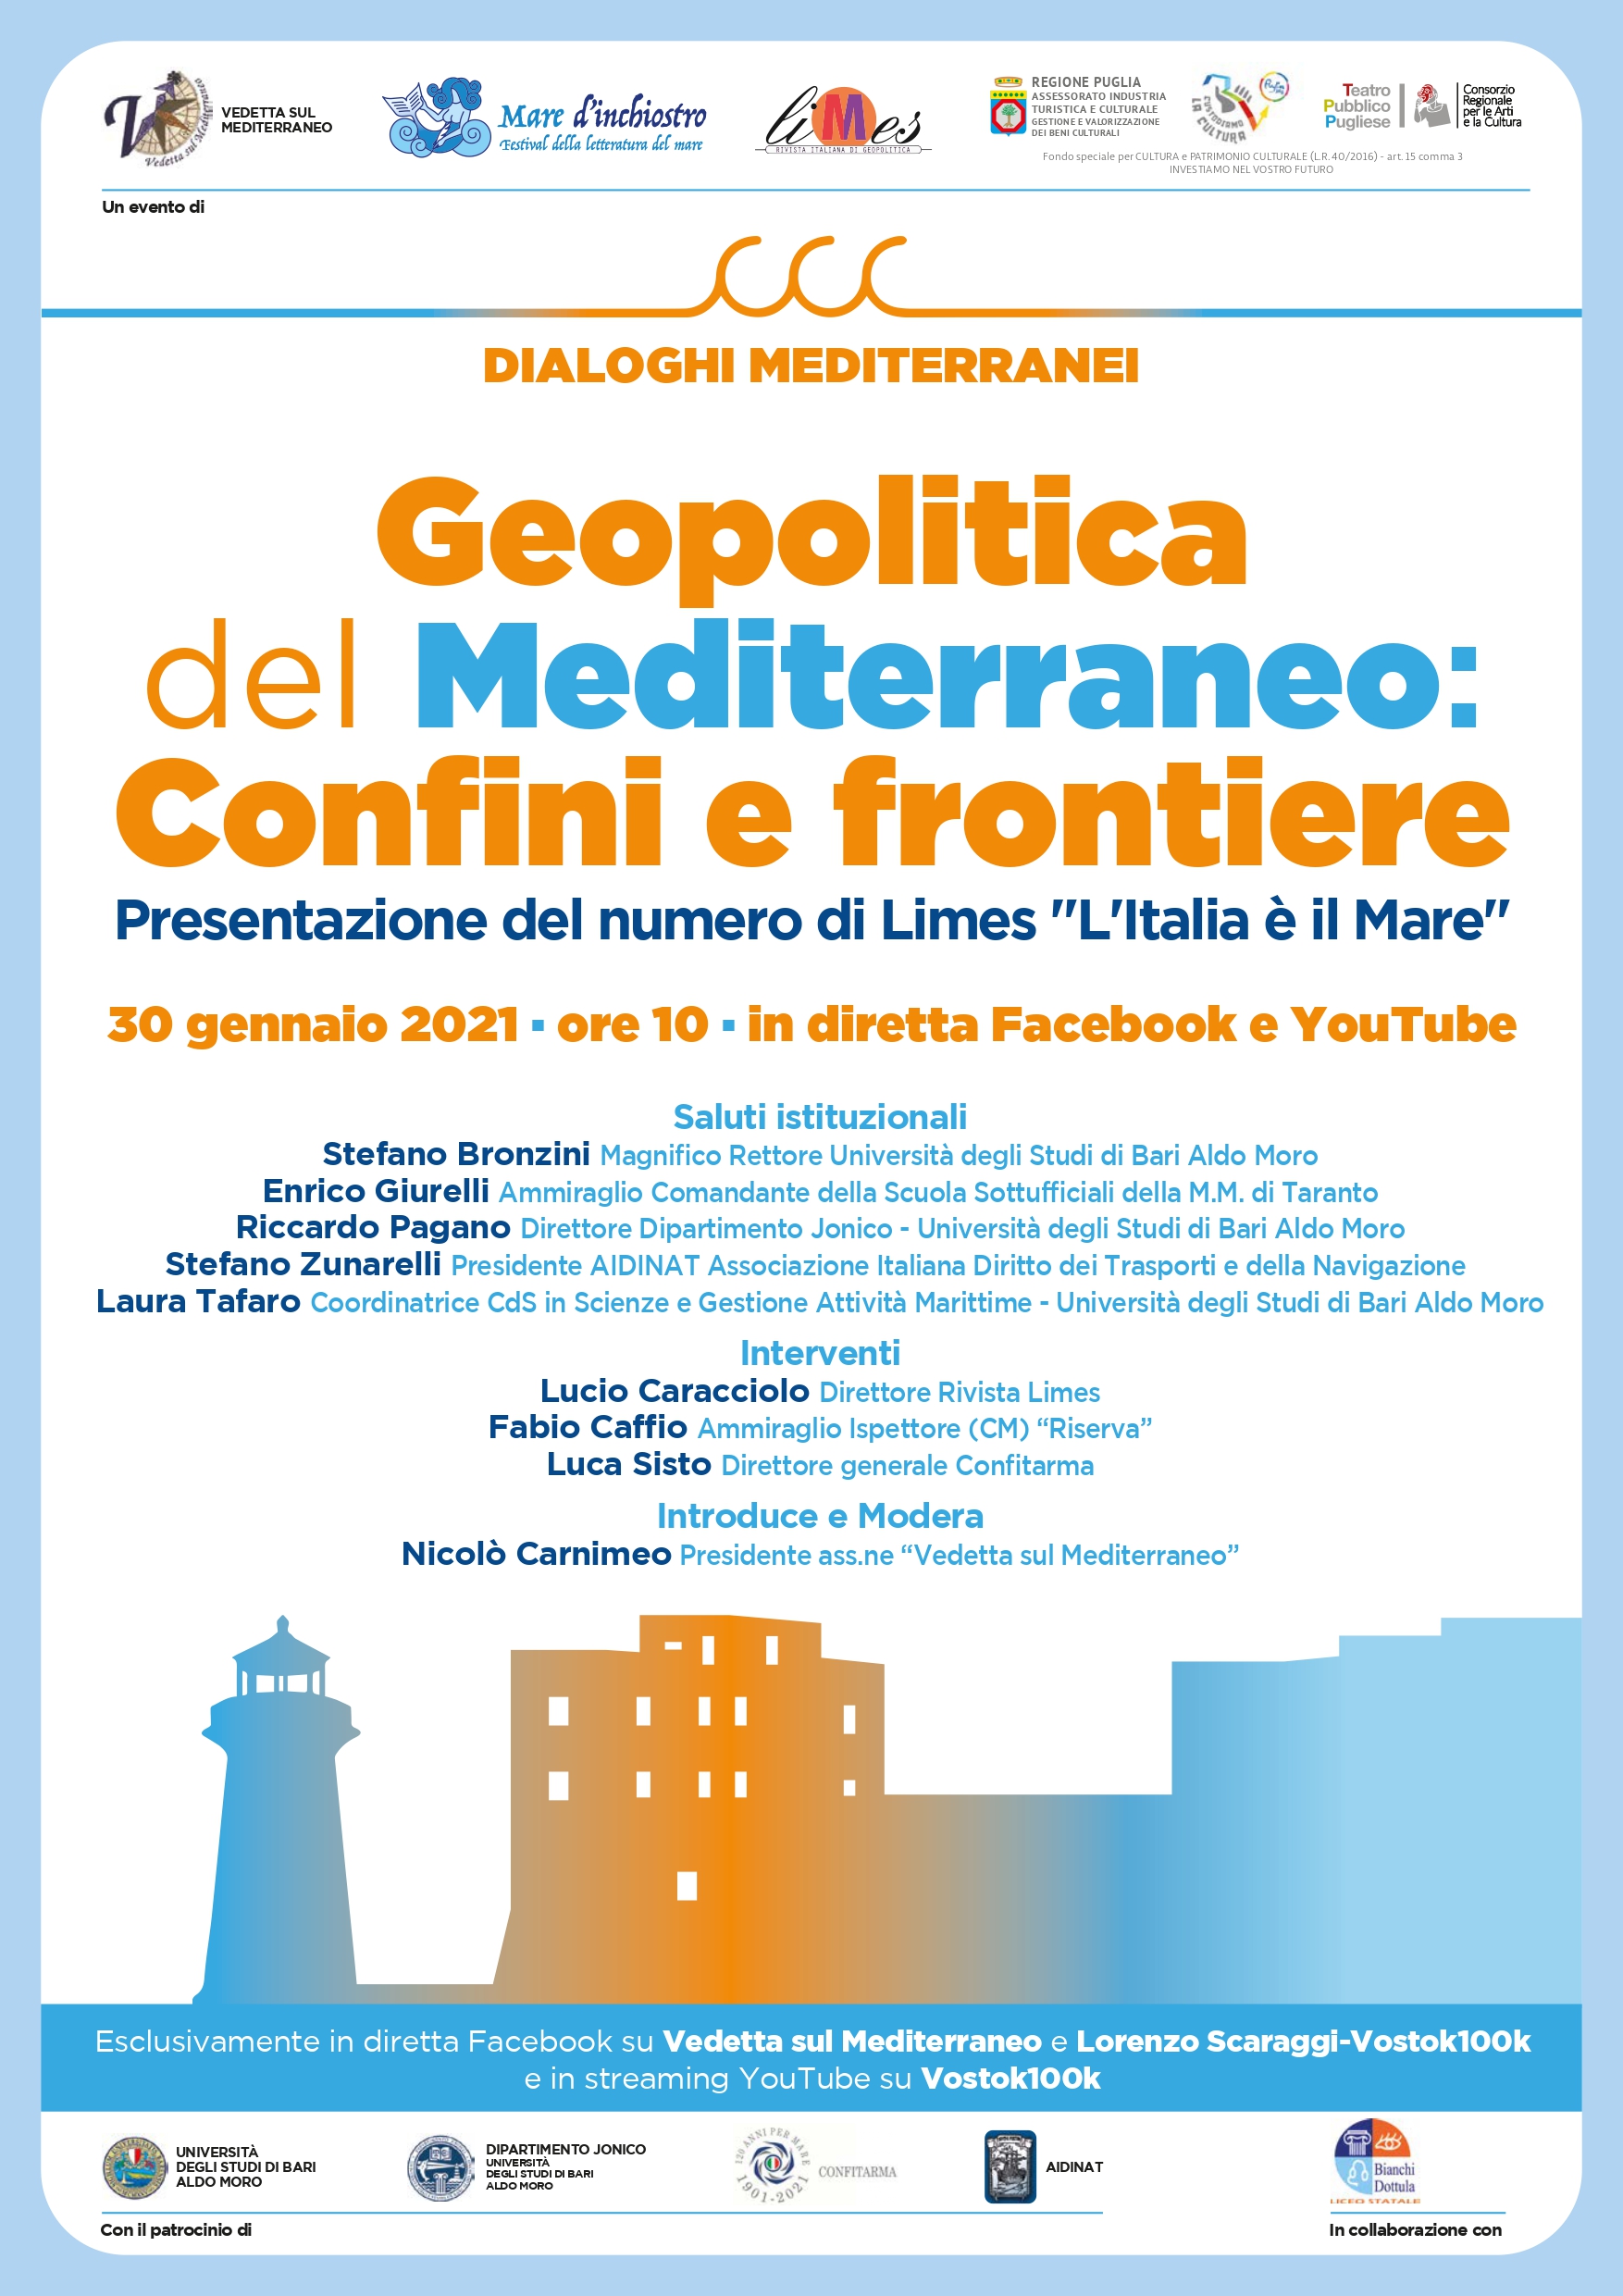 “Geopolitica del Mediterraneo: confini e frontiere”